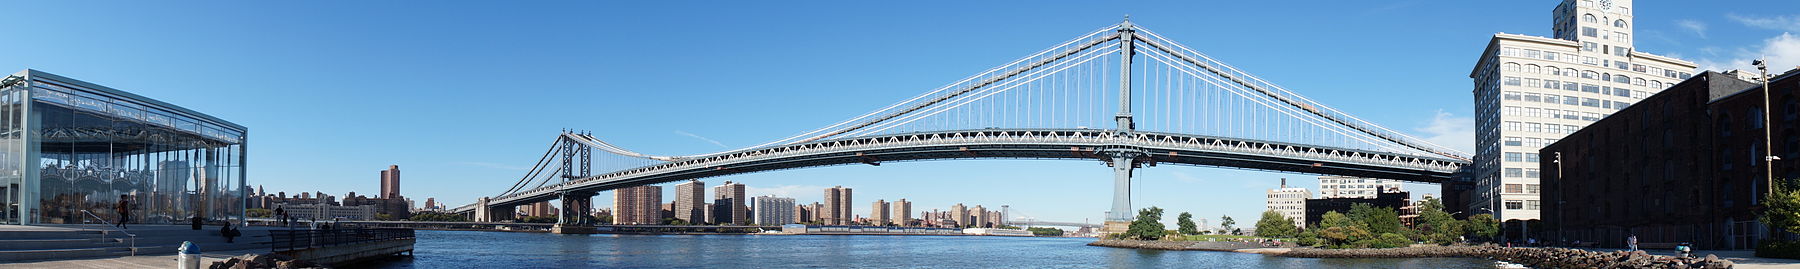 曼哈頓大橋